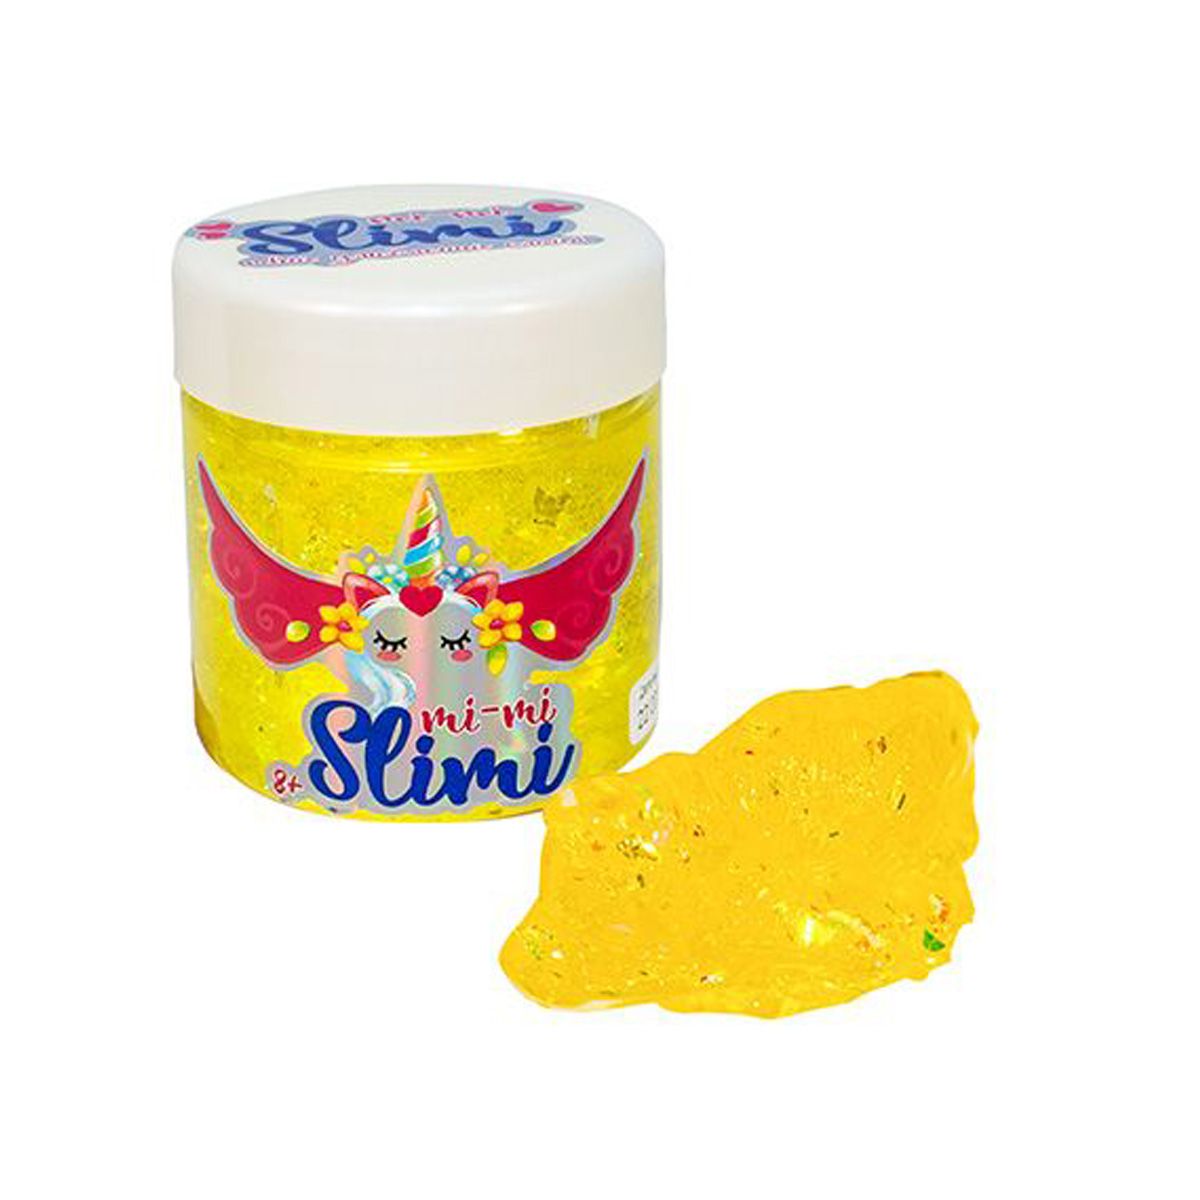 Слайм "Mi-mi Slimi" з фольгою 150 г, жовтий